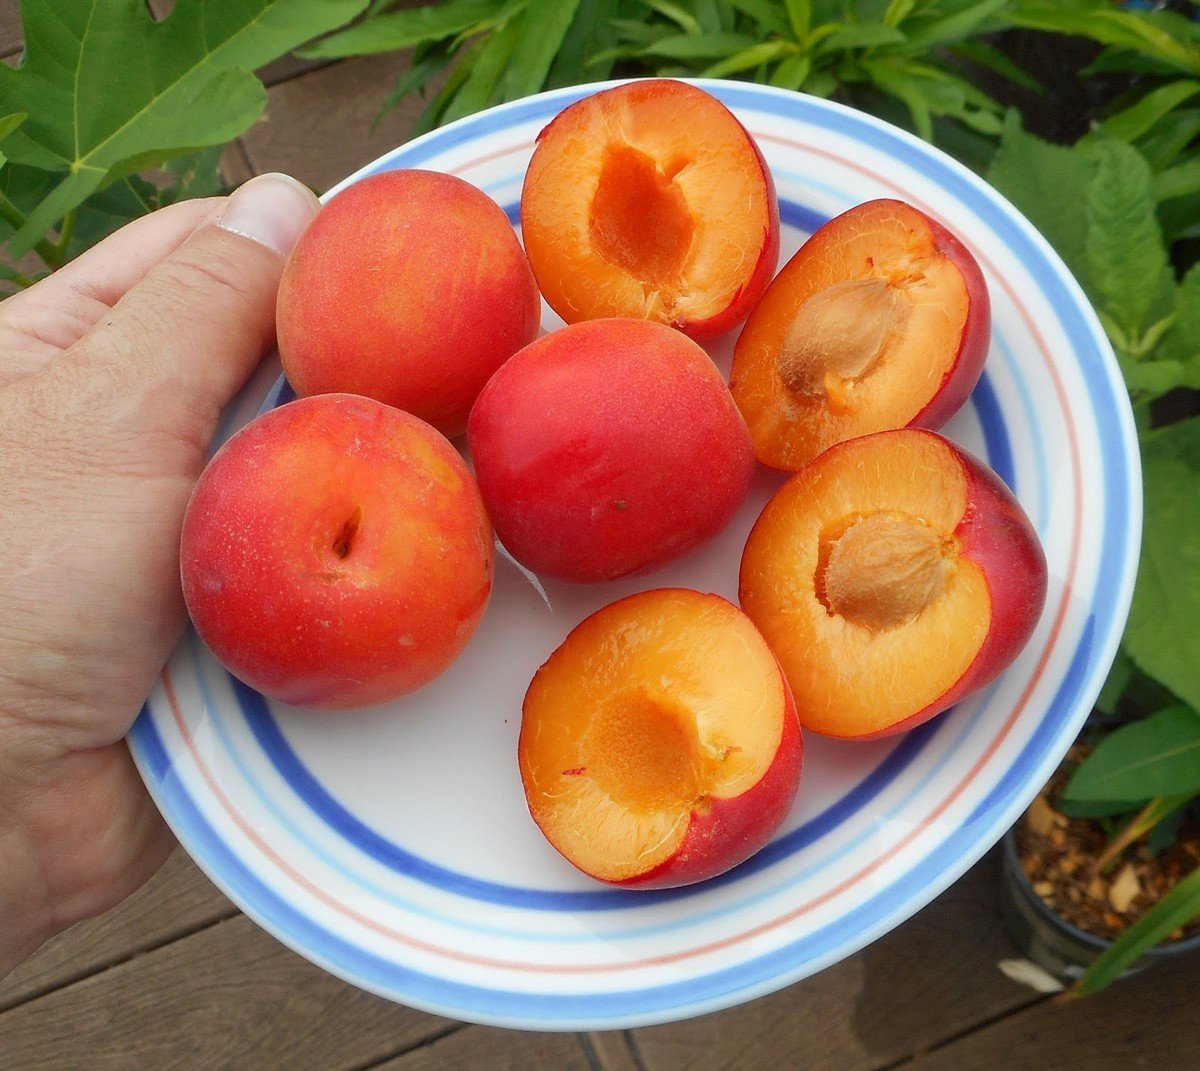 Плумкот, априум и шарафуга — уникальные межвидовые гибриды абрикоса и сливы.Описание, выращивание, фото — Ботаничка